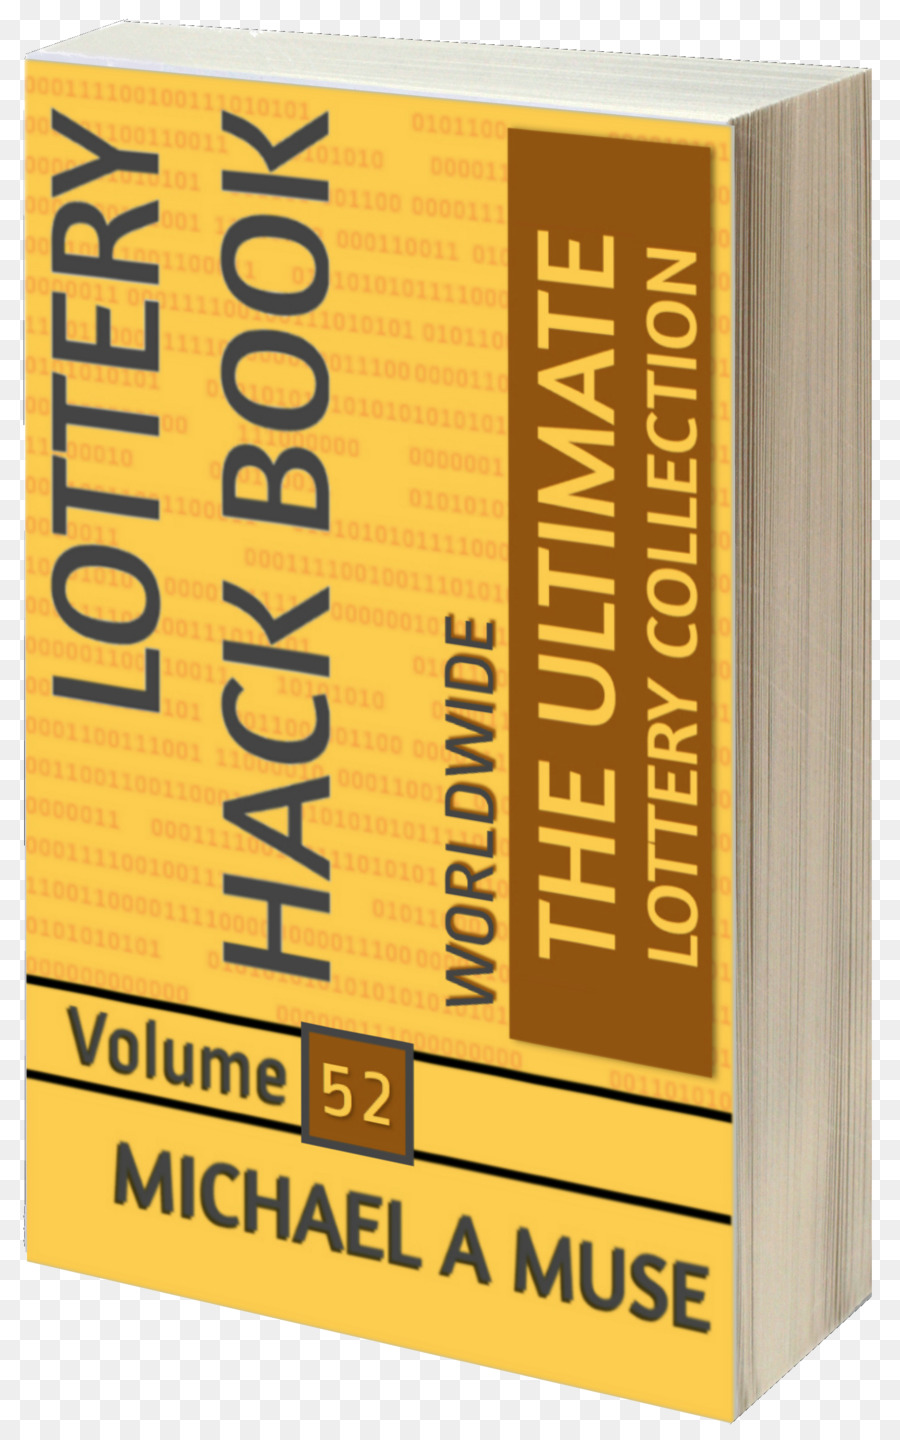 Buch-cover Band Kochbuch Lotterie - jährliche Lotterie tickets